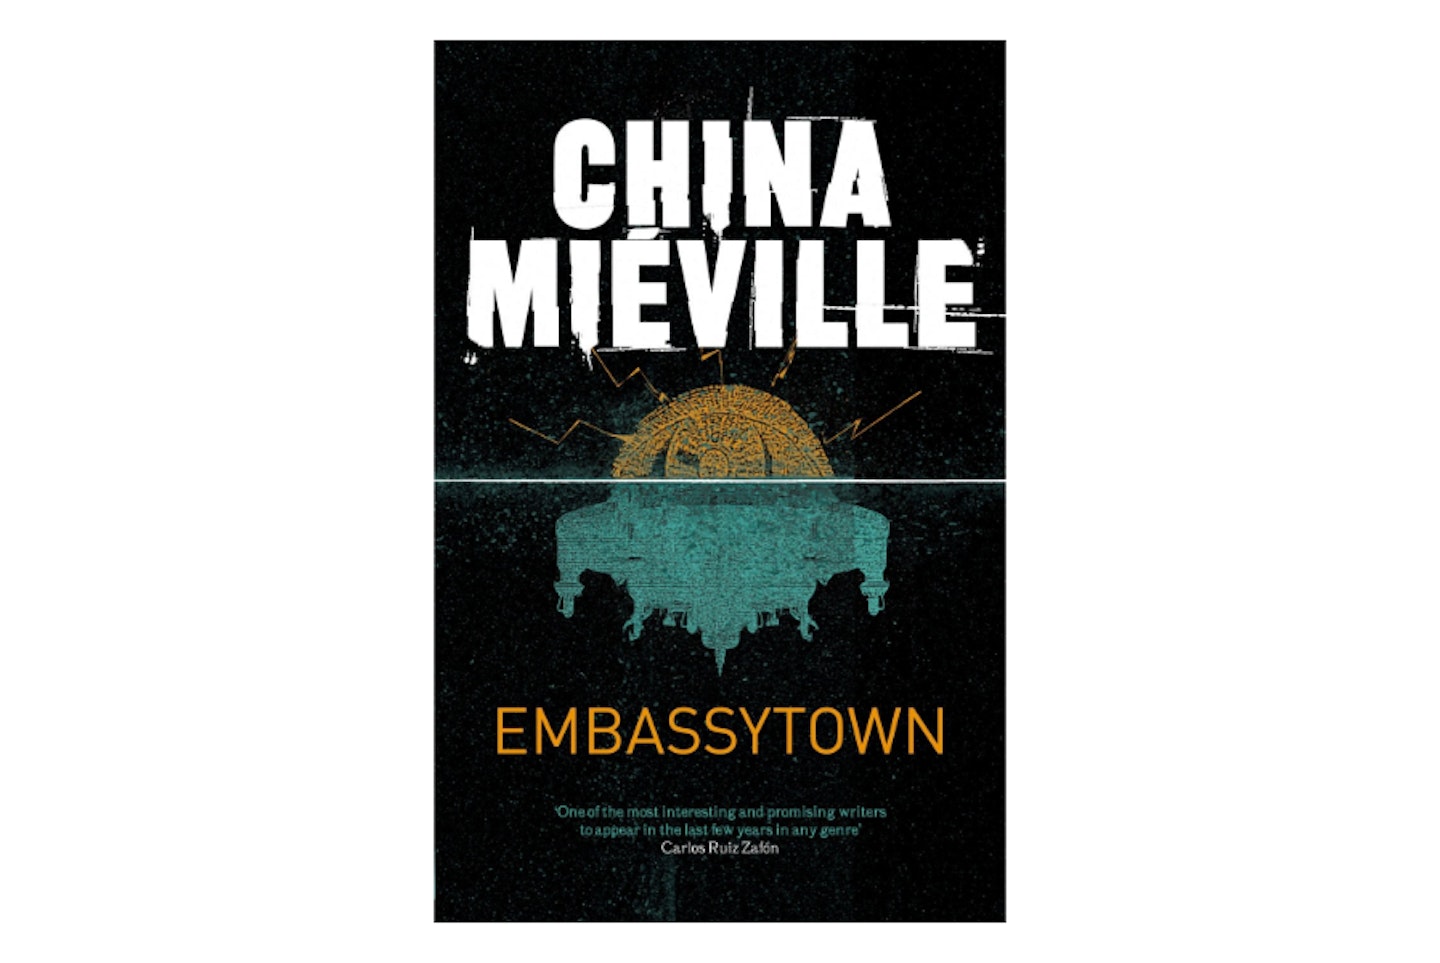 Embassytown by China Miu00e9ville, 2011